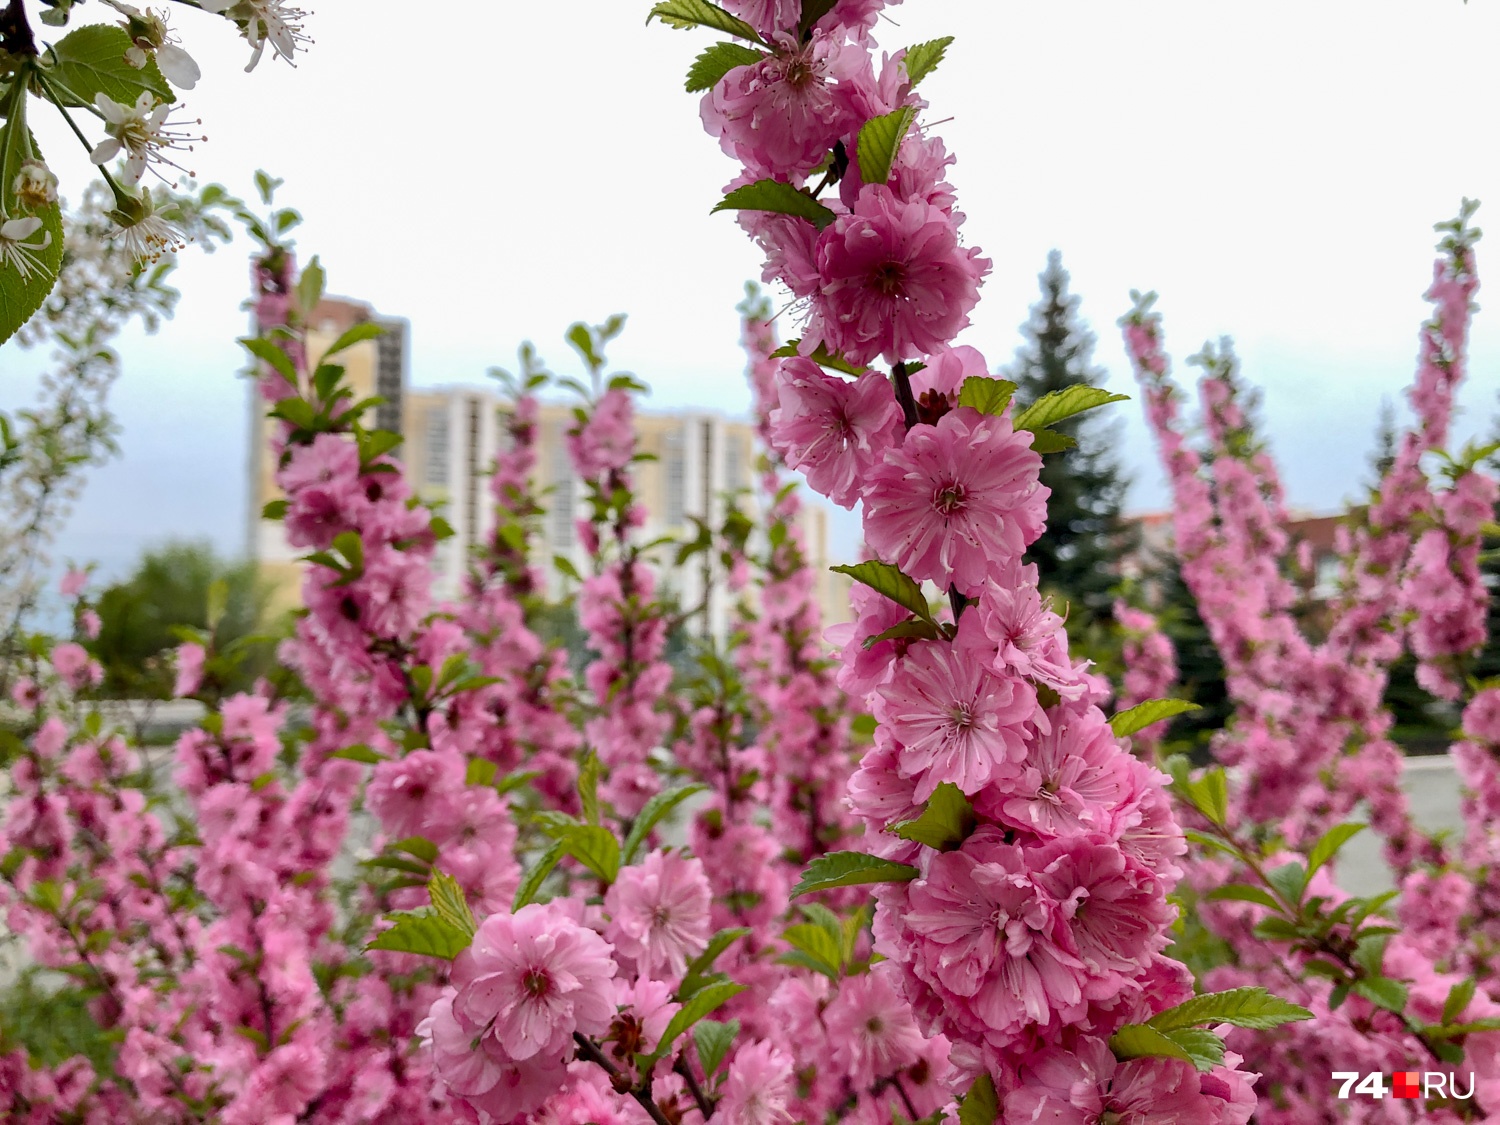 Сакура. Кто-то на планерке сказал, что на Урале можно называть сакурой всё, что розовое и цветет, на что дизайнер Полина Авдошина заметила: «Получается, прыщи — тоже в каком-то смысле сакура»